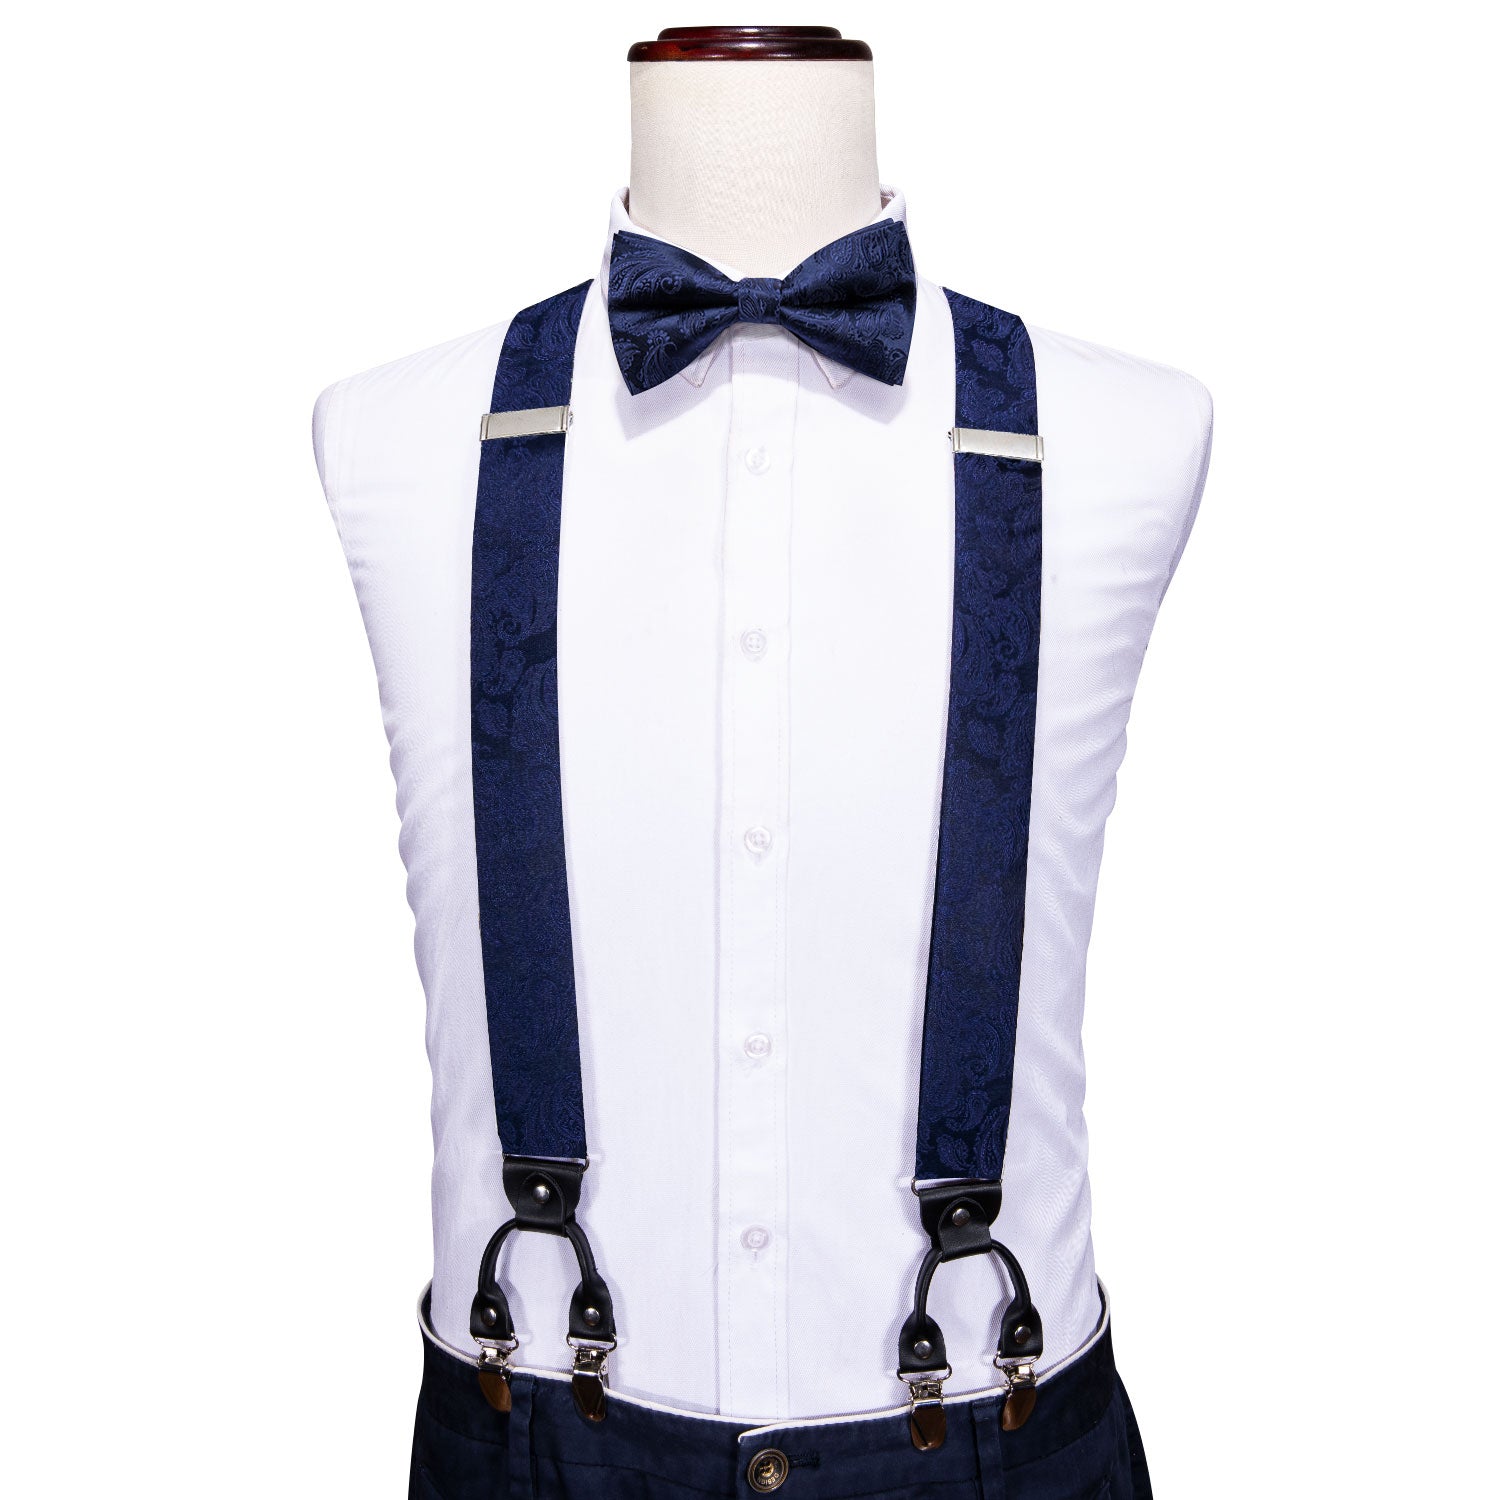 Blue Paisley Y Back Adjustable Bow Tie Suspenders Set